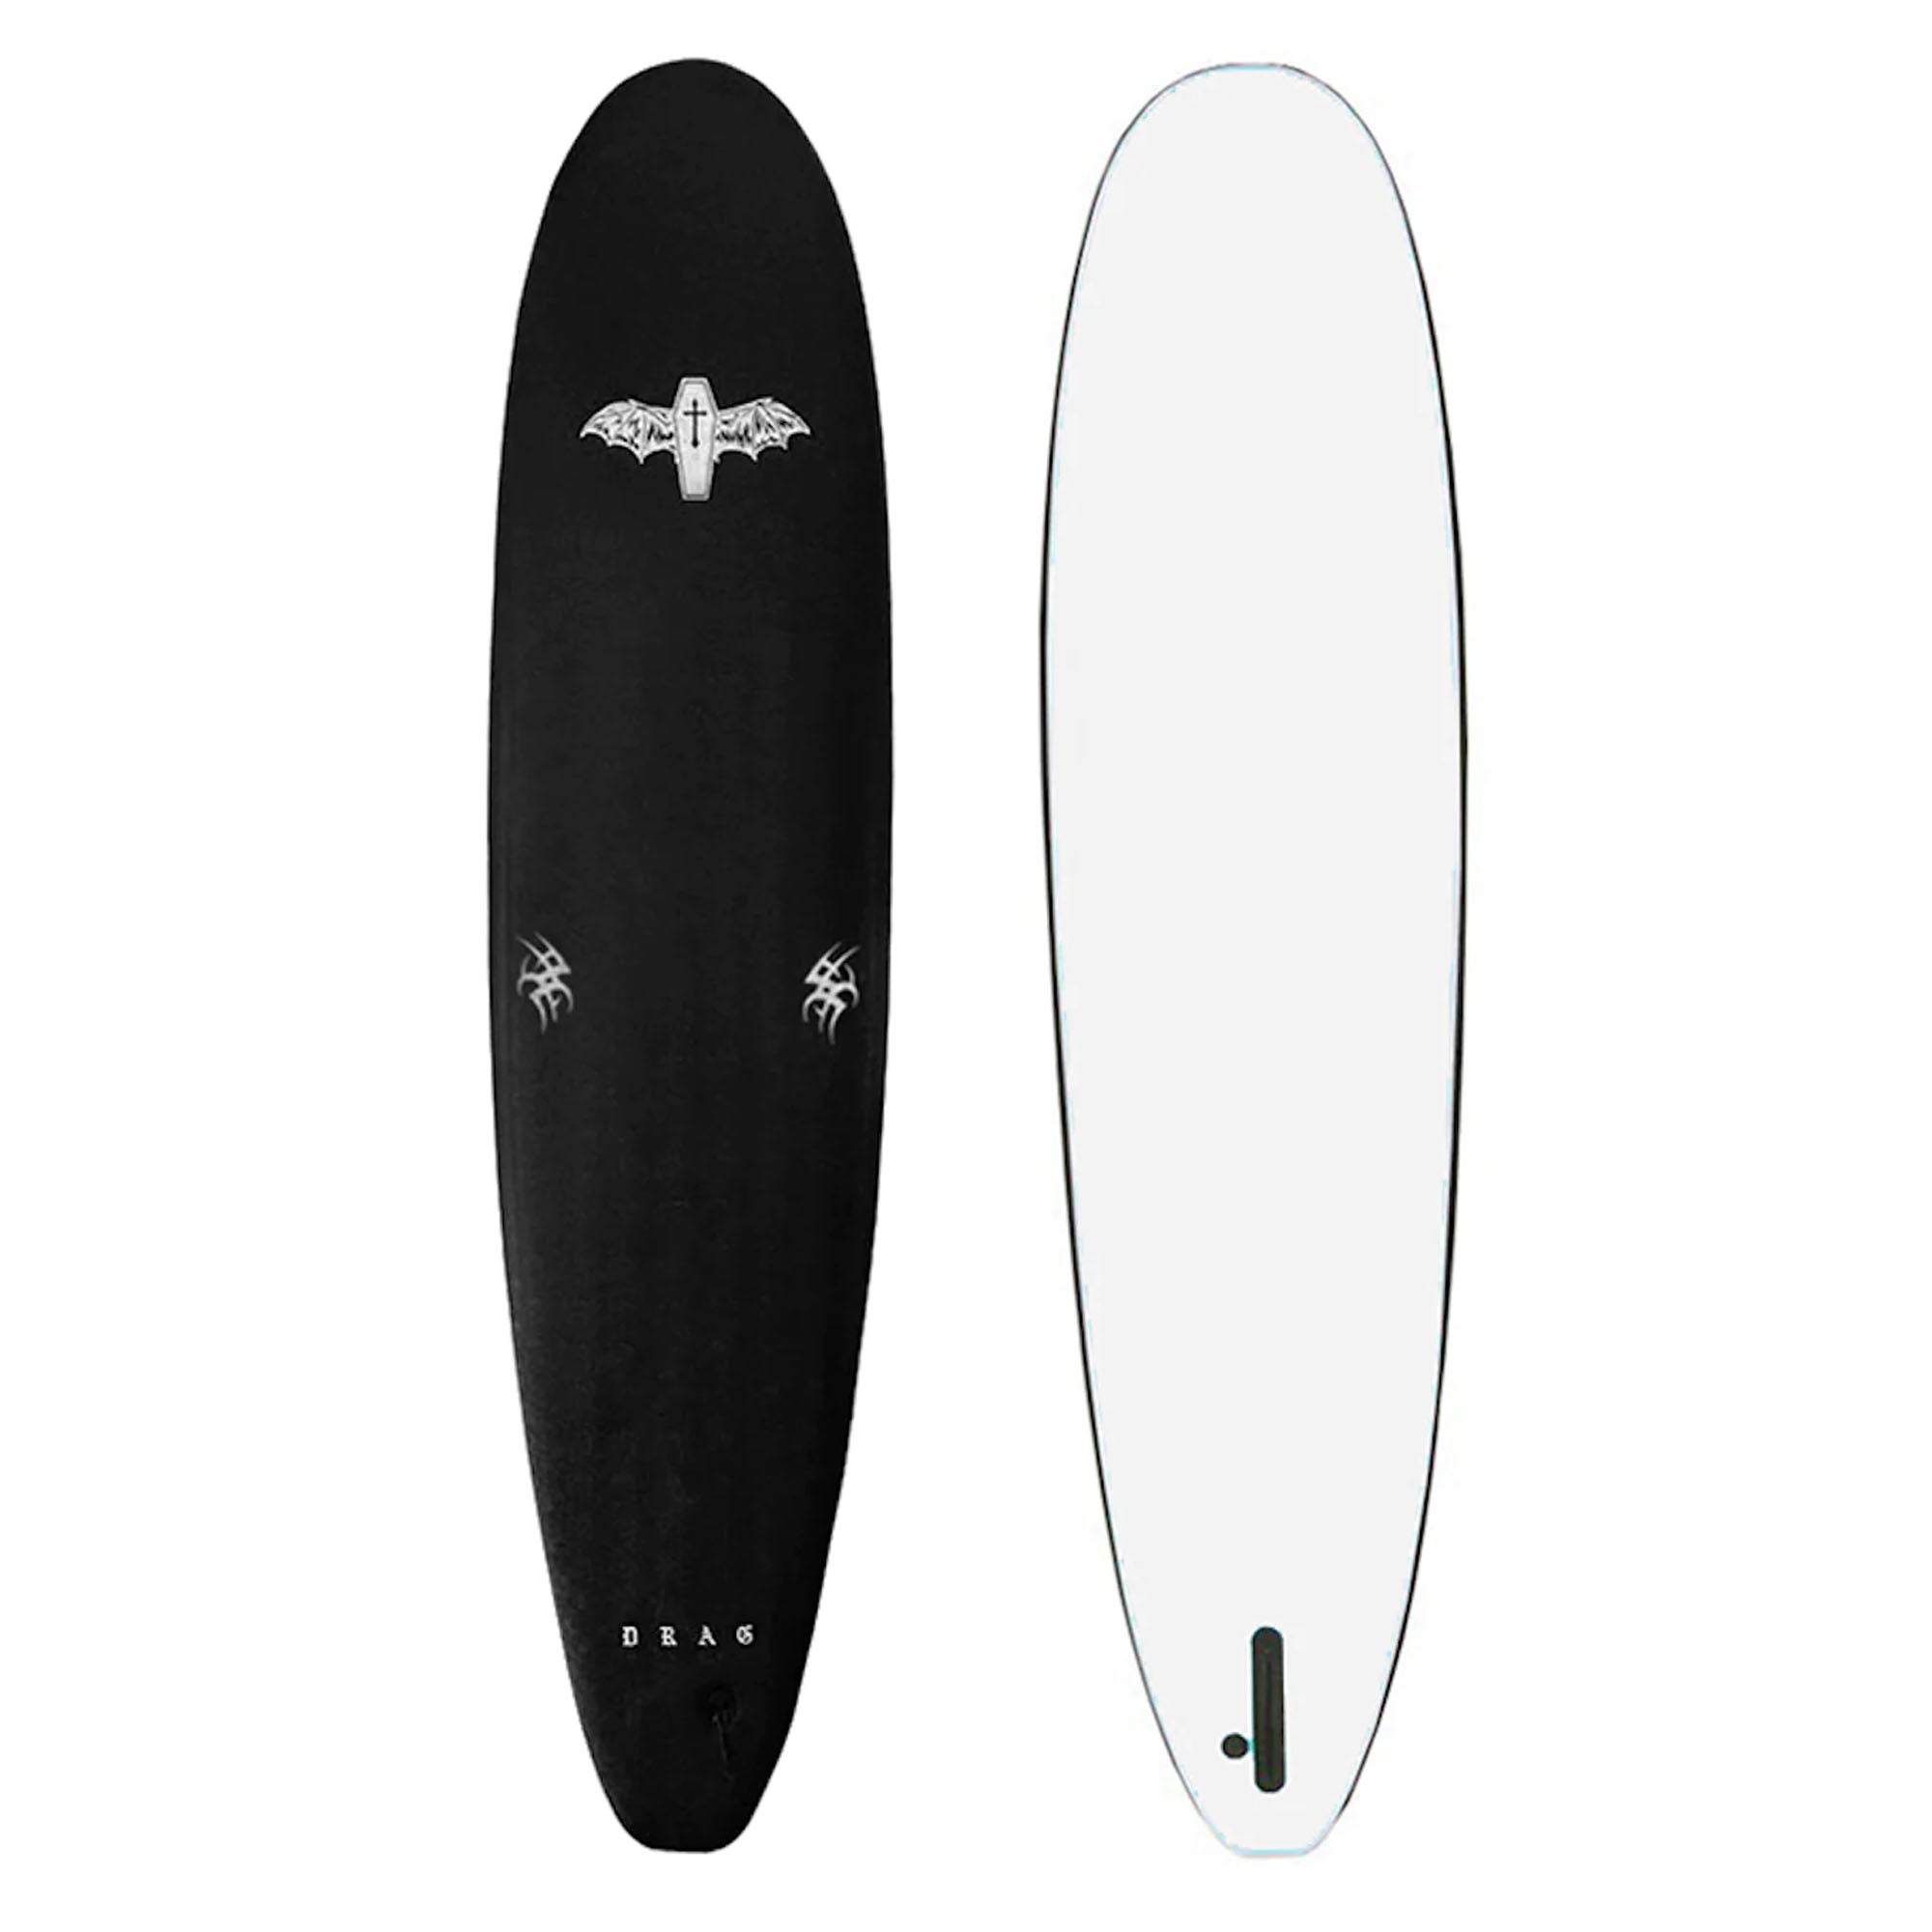 Drag Coffin 8'0 Single Fin Soft Surfboard